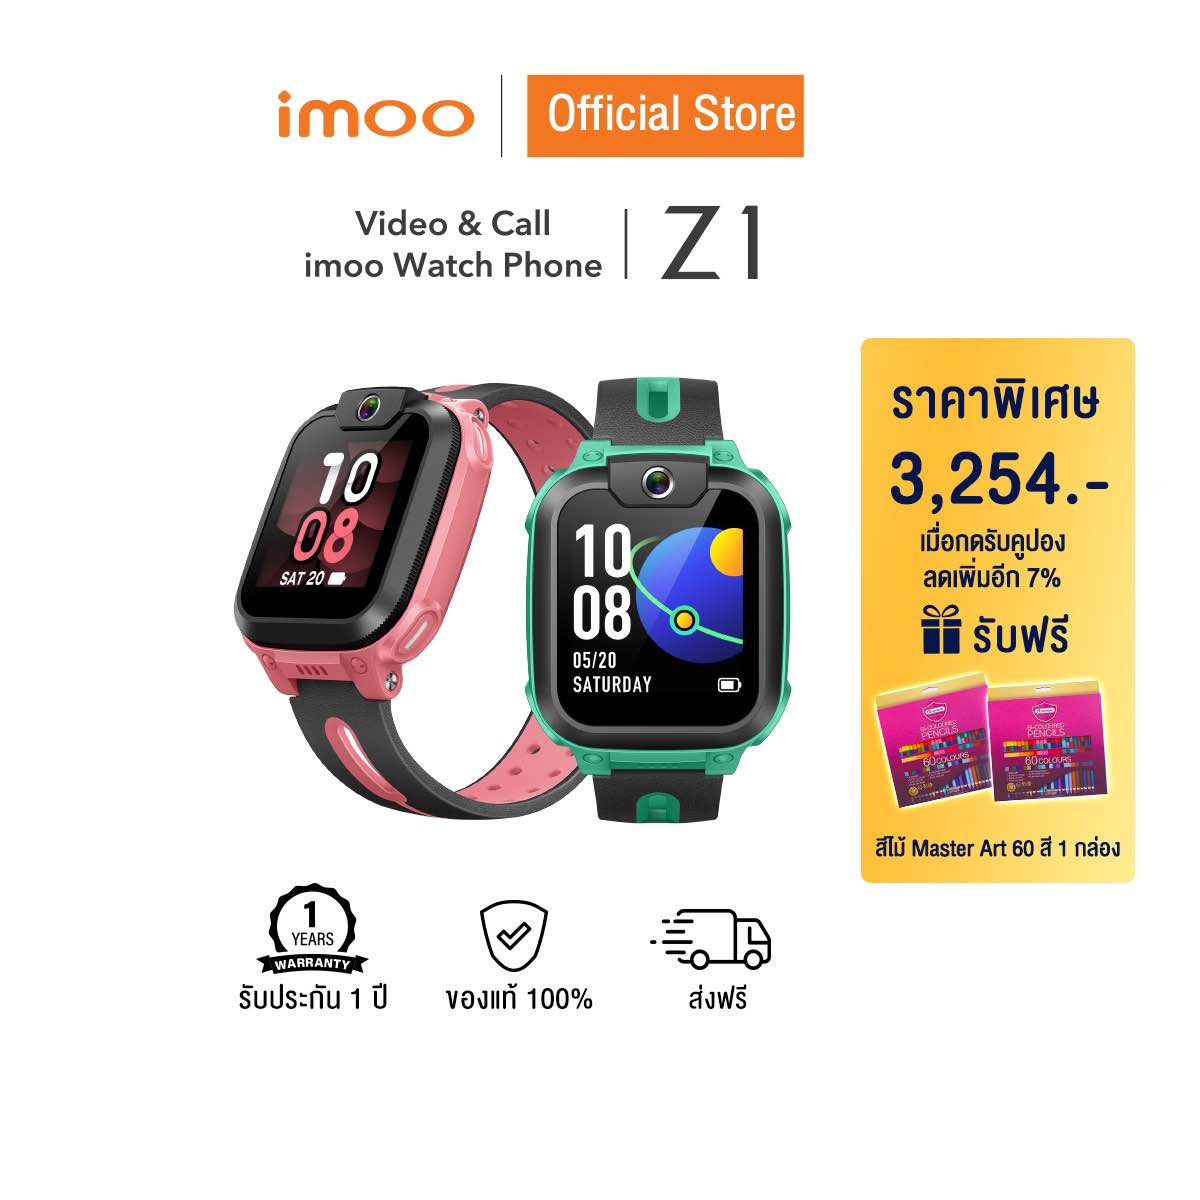 โปรโมชั่น Flash Sale : [รับฟรีสีไม้ 1 ชิ้น] imoo Watch Phone Z1 นาฬิกา imoo นาฬิกาไอโม่ วิดีโอคอล โทร แชท ถ่ายรูป 4G ติดตามตัวเด็ก นาฬิกาเด็ก gps สมาร์ทวอช ติดตามตัว